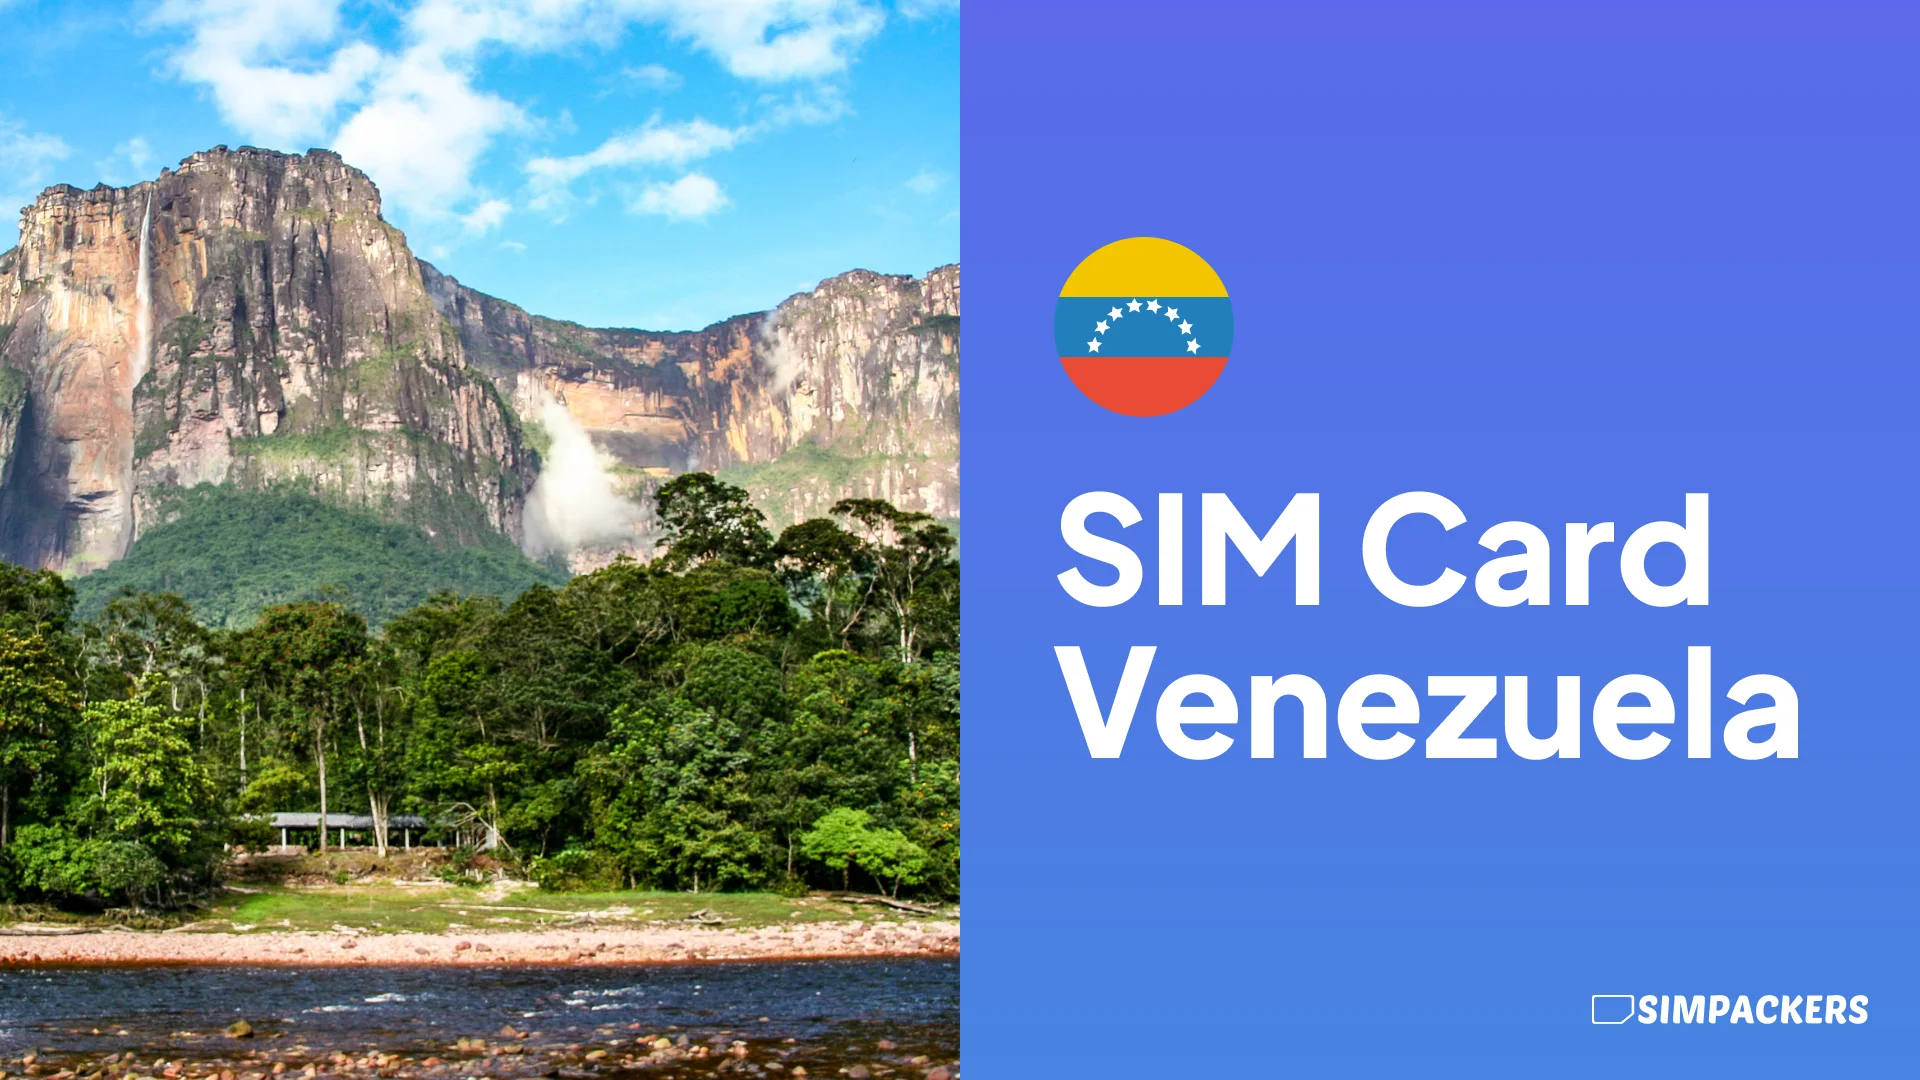 EN/FEATURED_IMAGES/sim-card-venezuela.webp